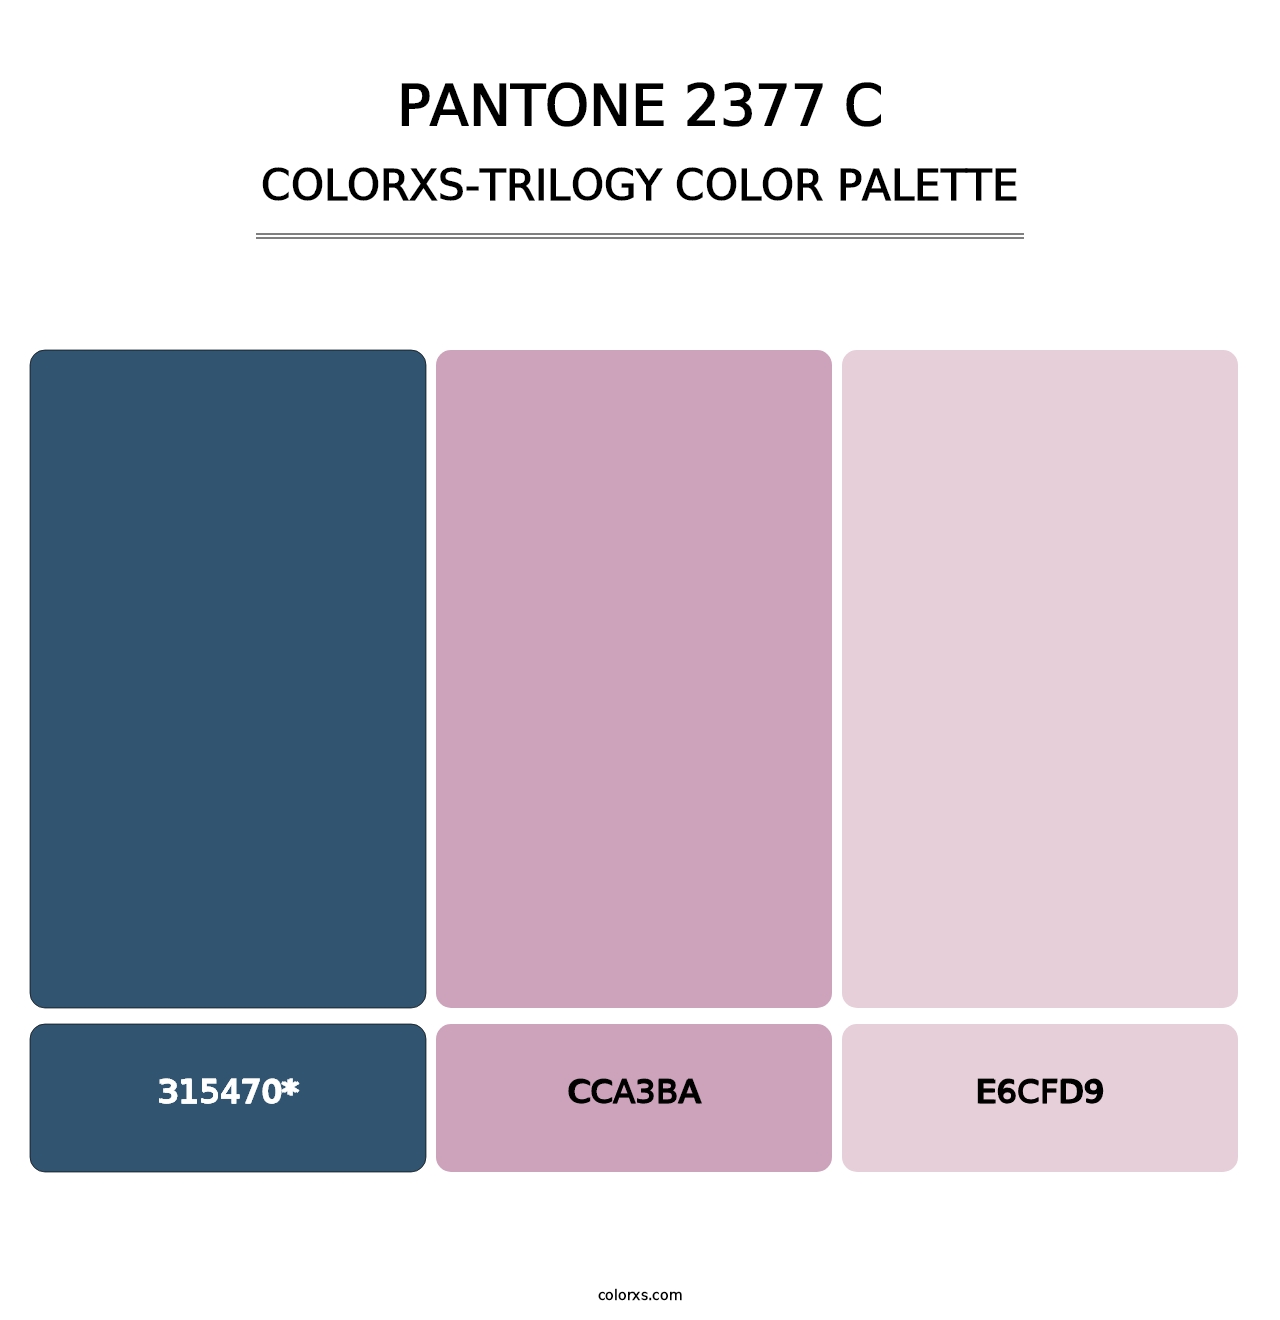 PANTONE 2377 C - Colorxs Trilogy Palette